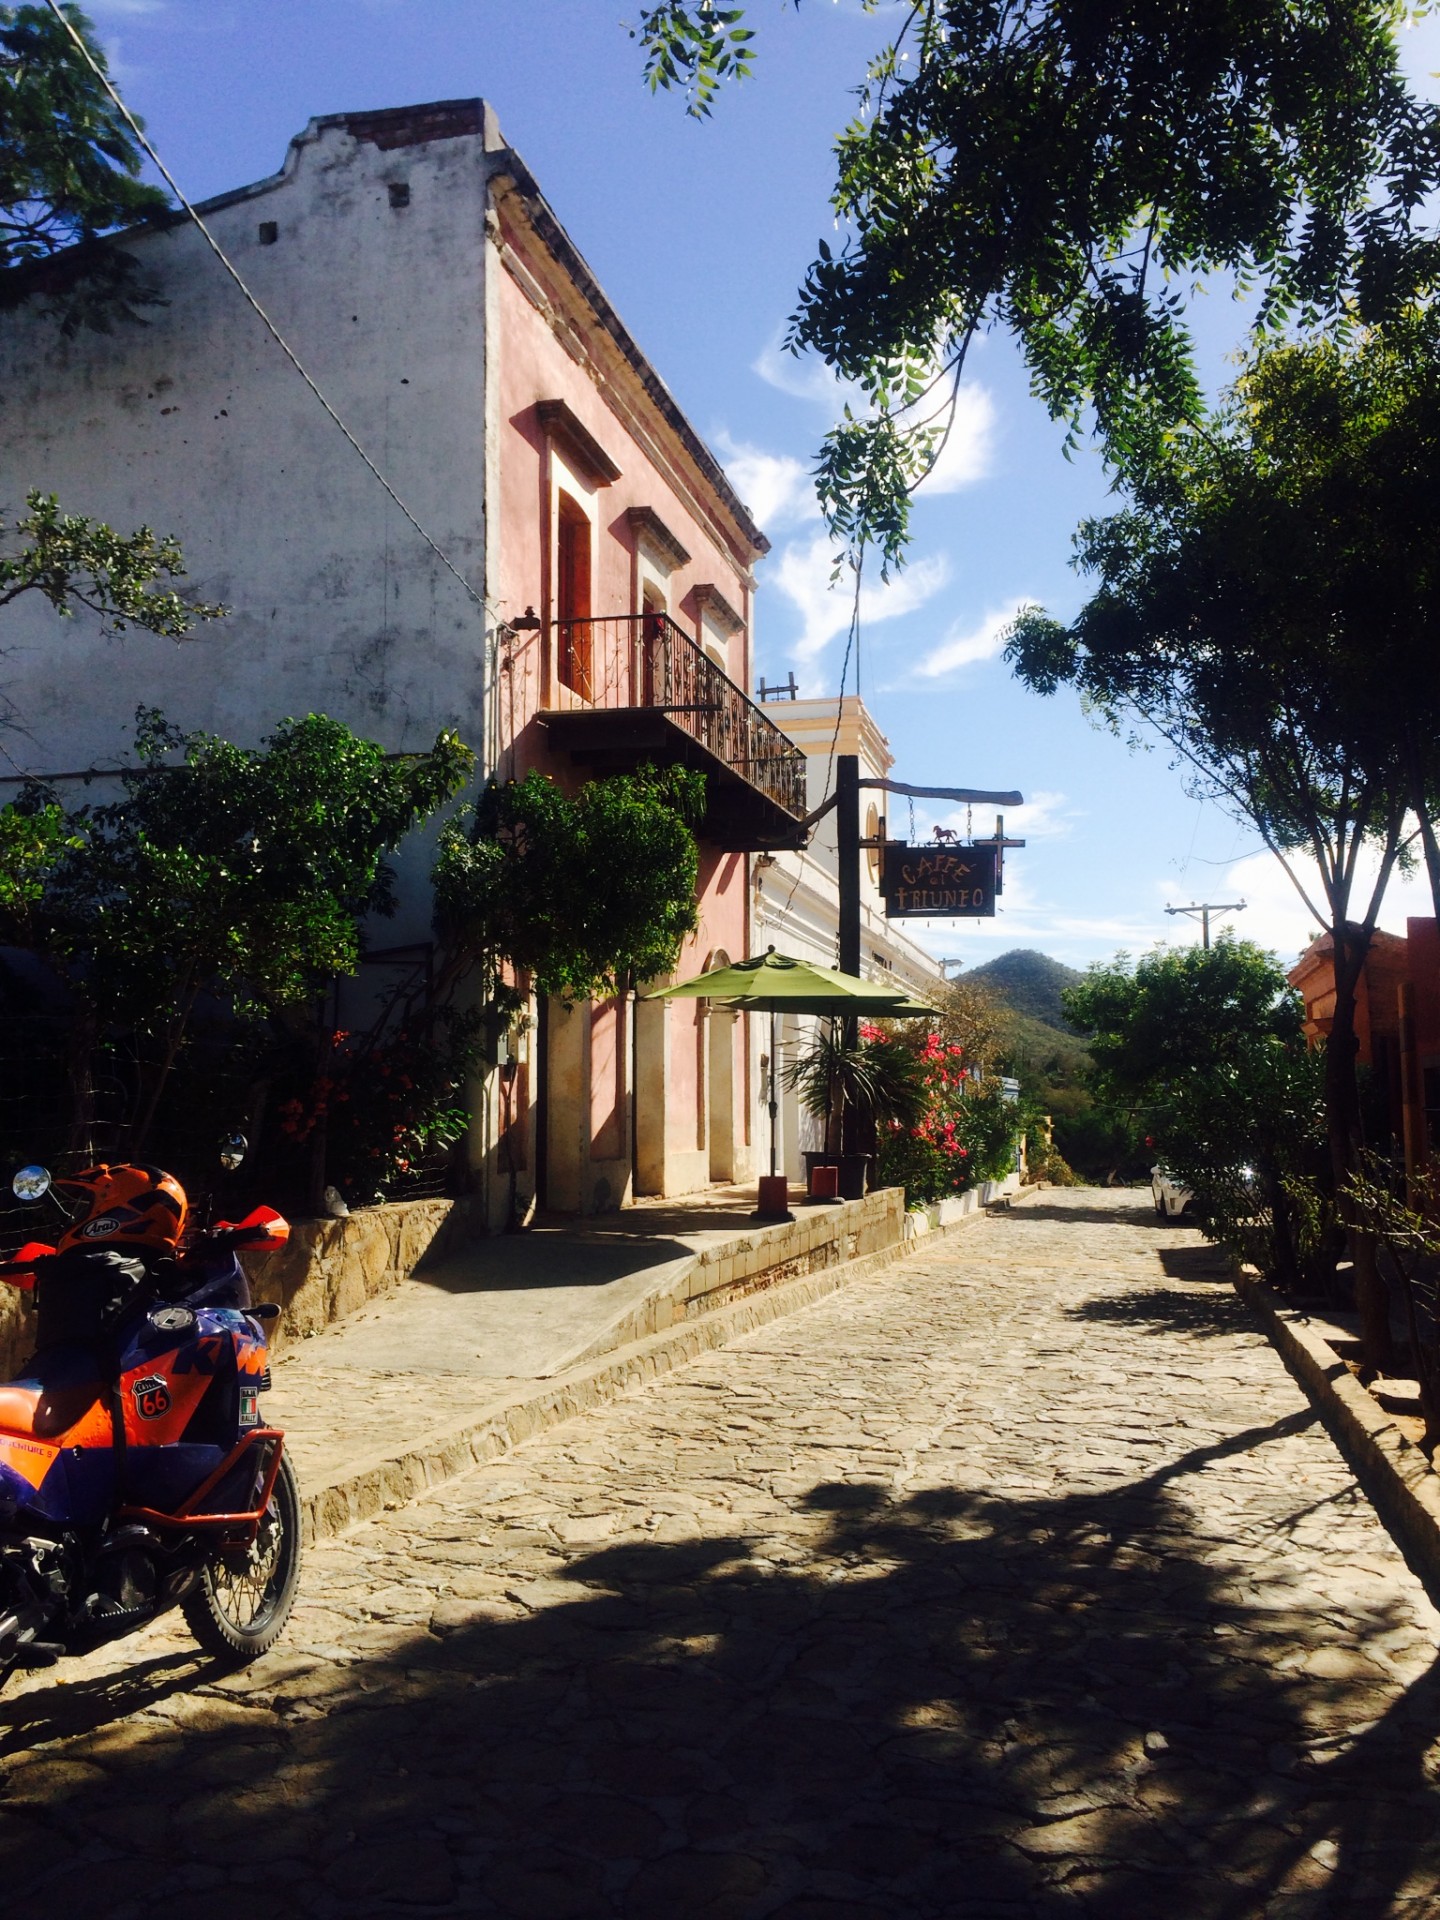 Streets of El Triunfo